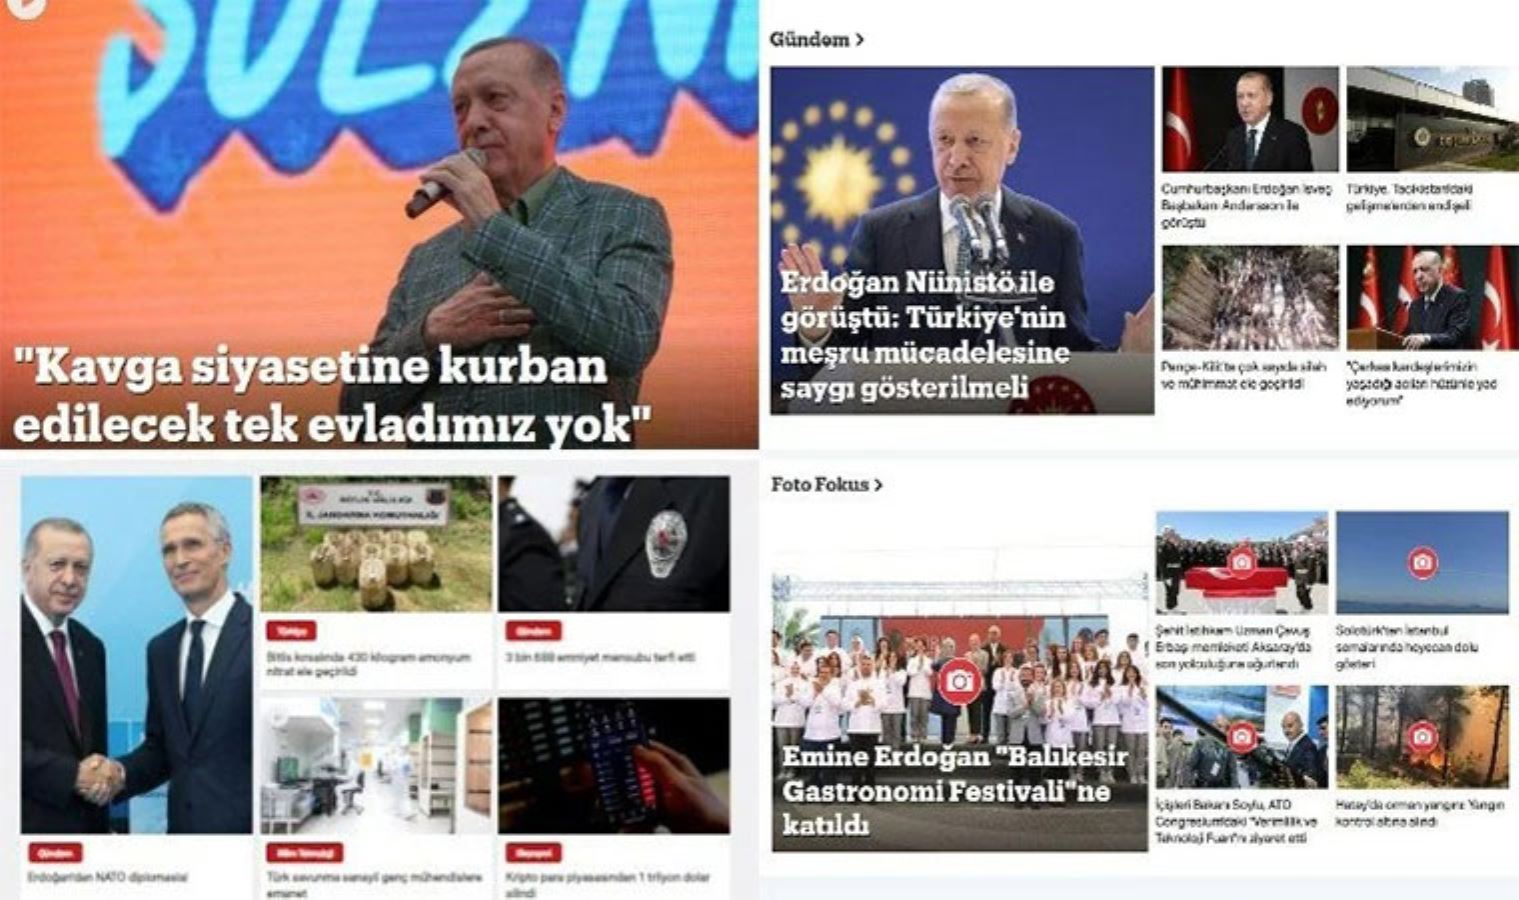 TRT Haber Kılıçdaroğlu'nun mitingini görmezden geldi